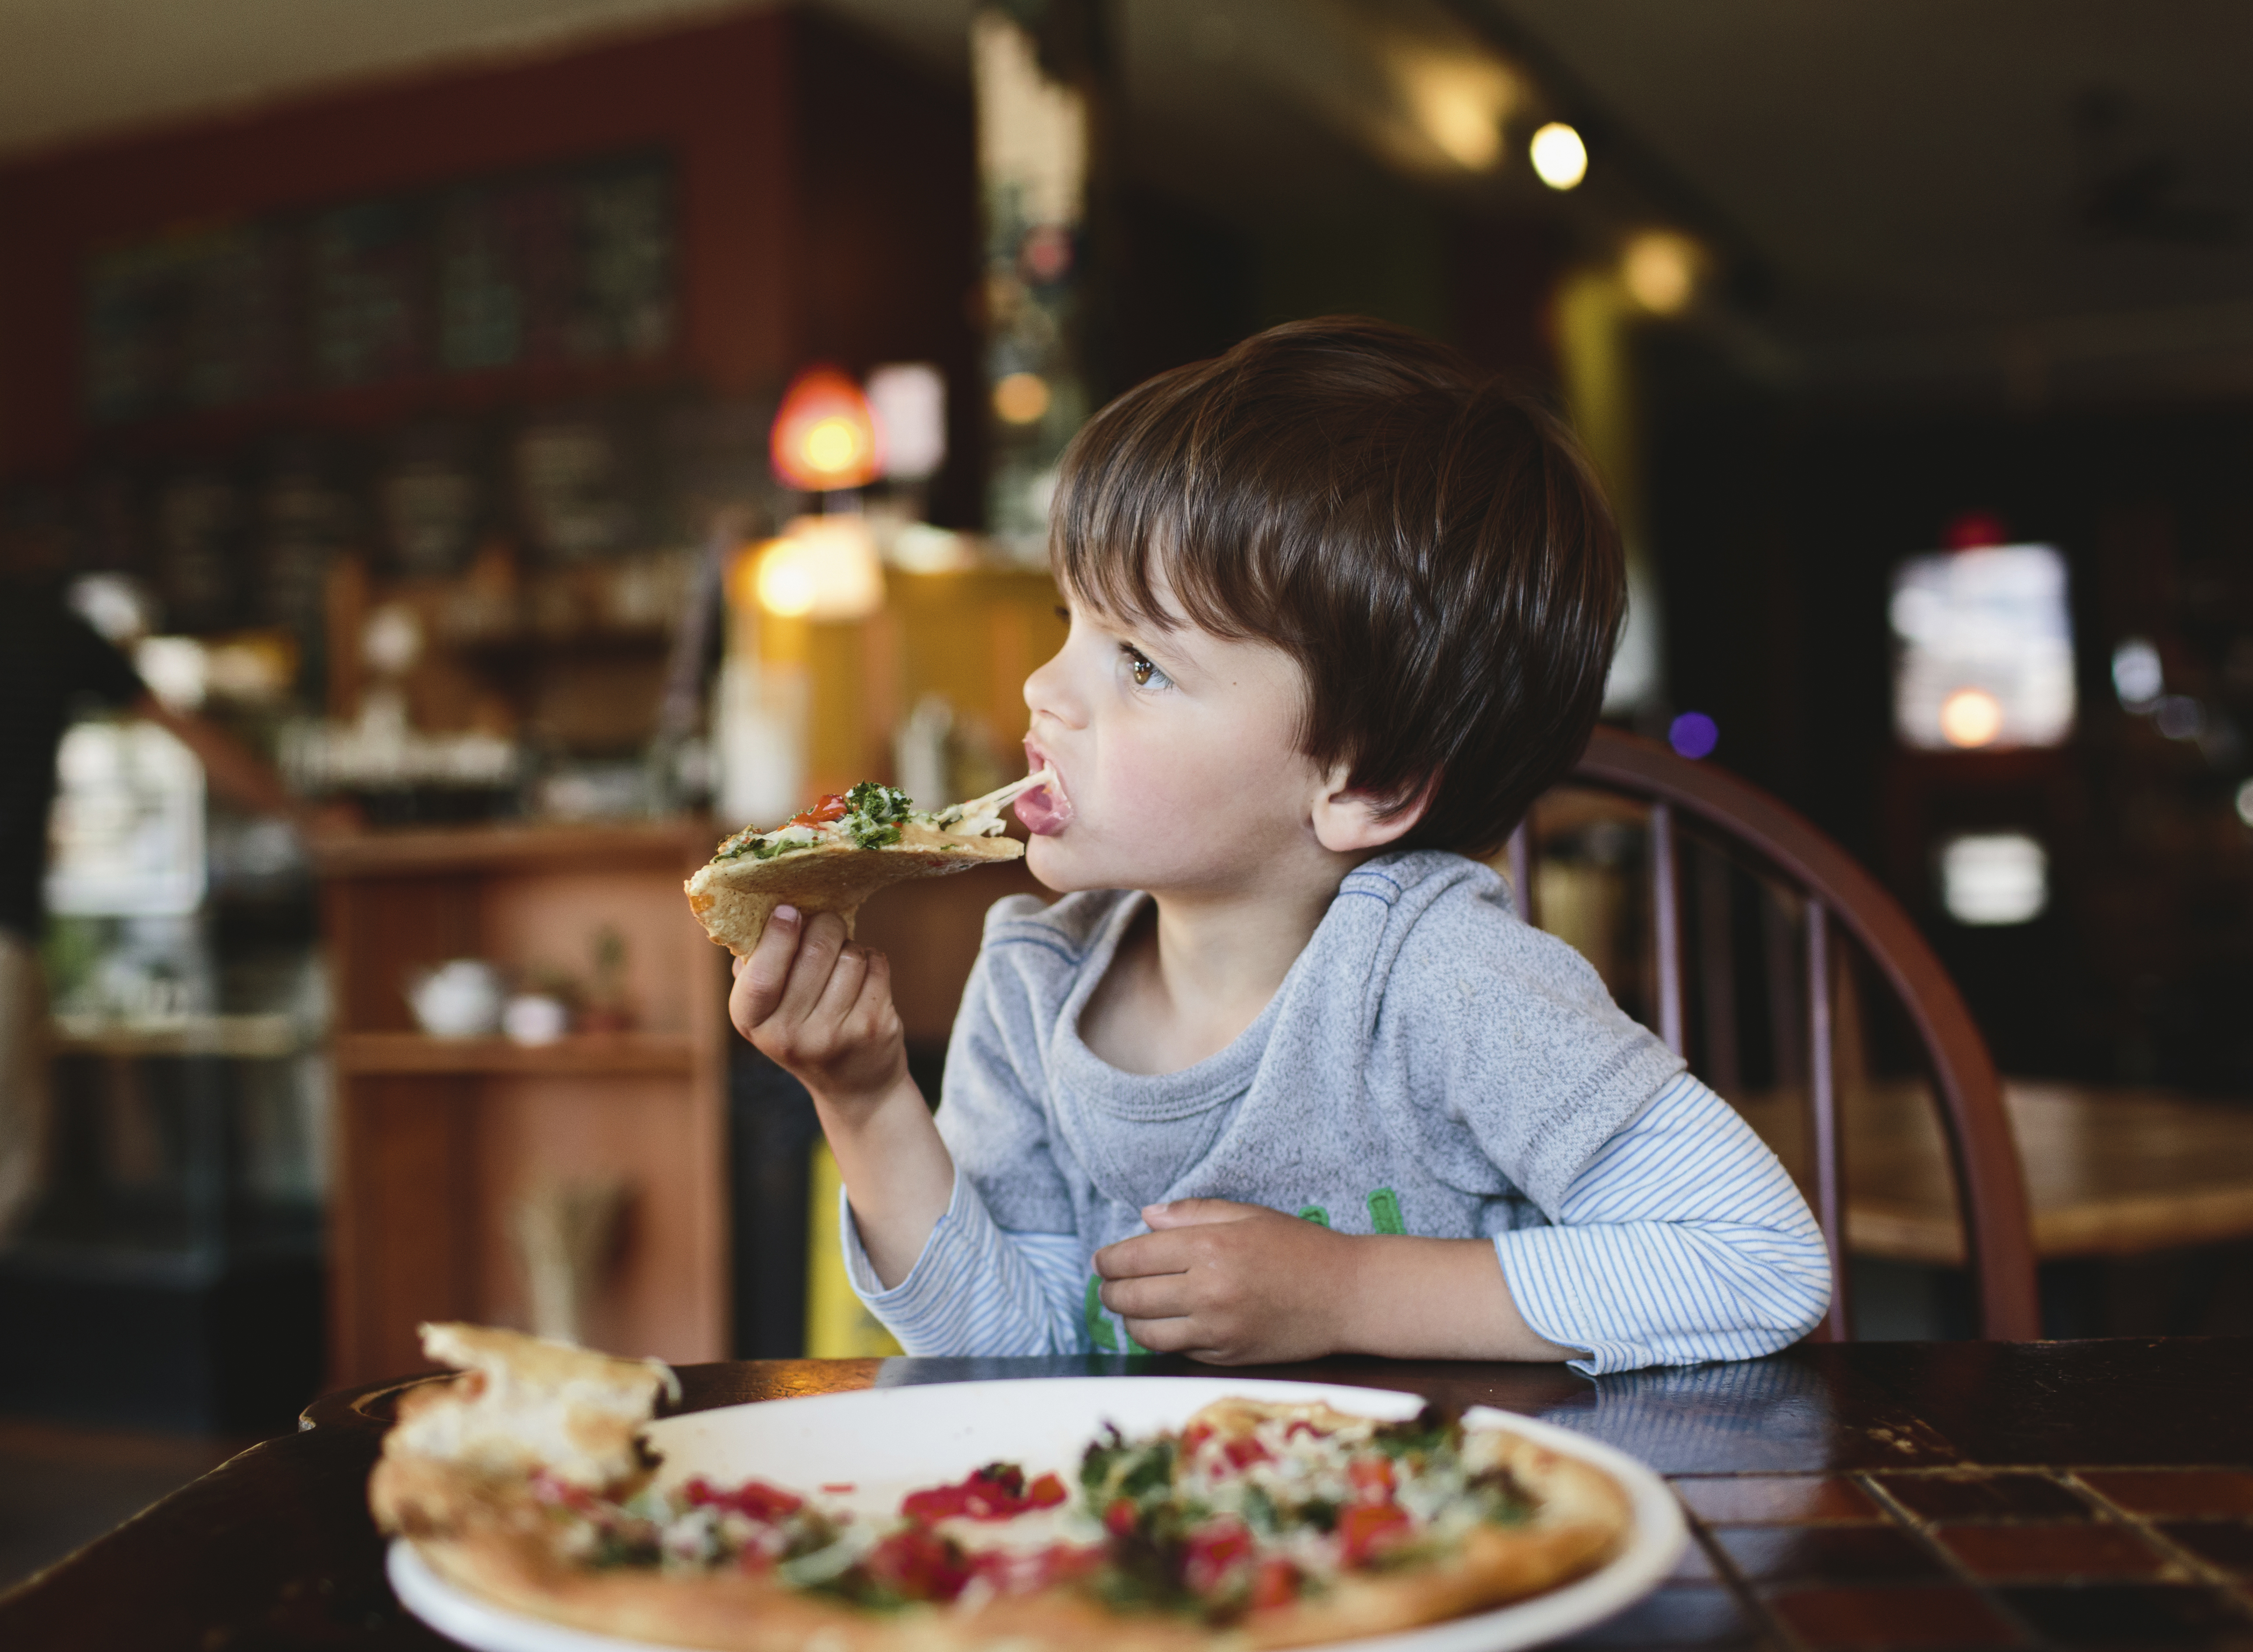 Have s rest. Еда в кафе для детей. Ребенок завтракает. Дети едят пиццу. Пицца для детей.